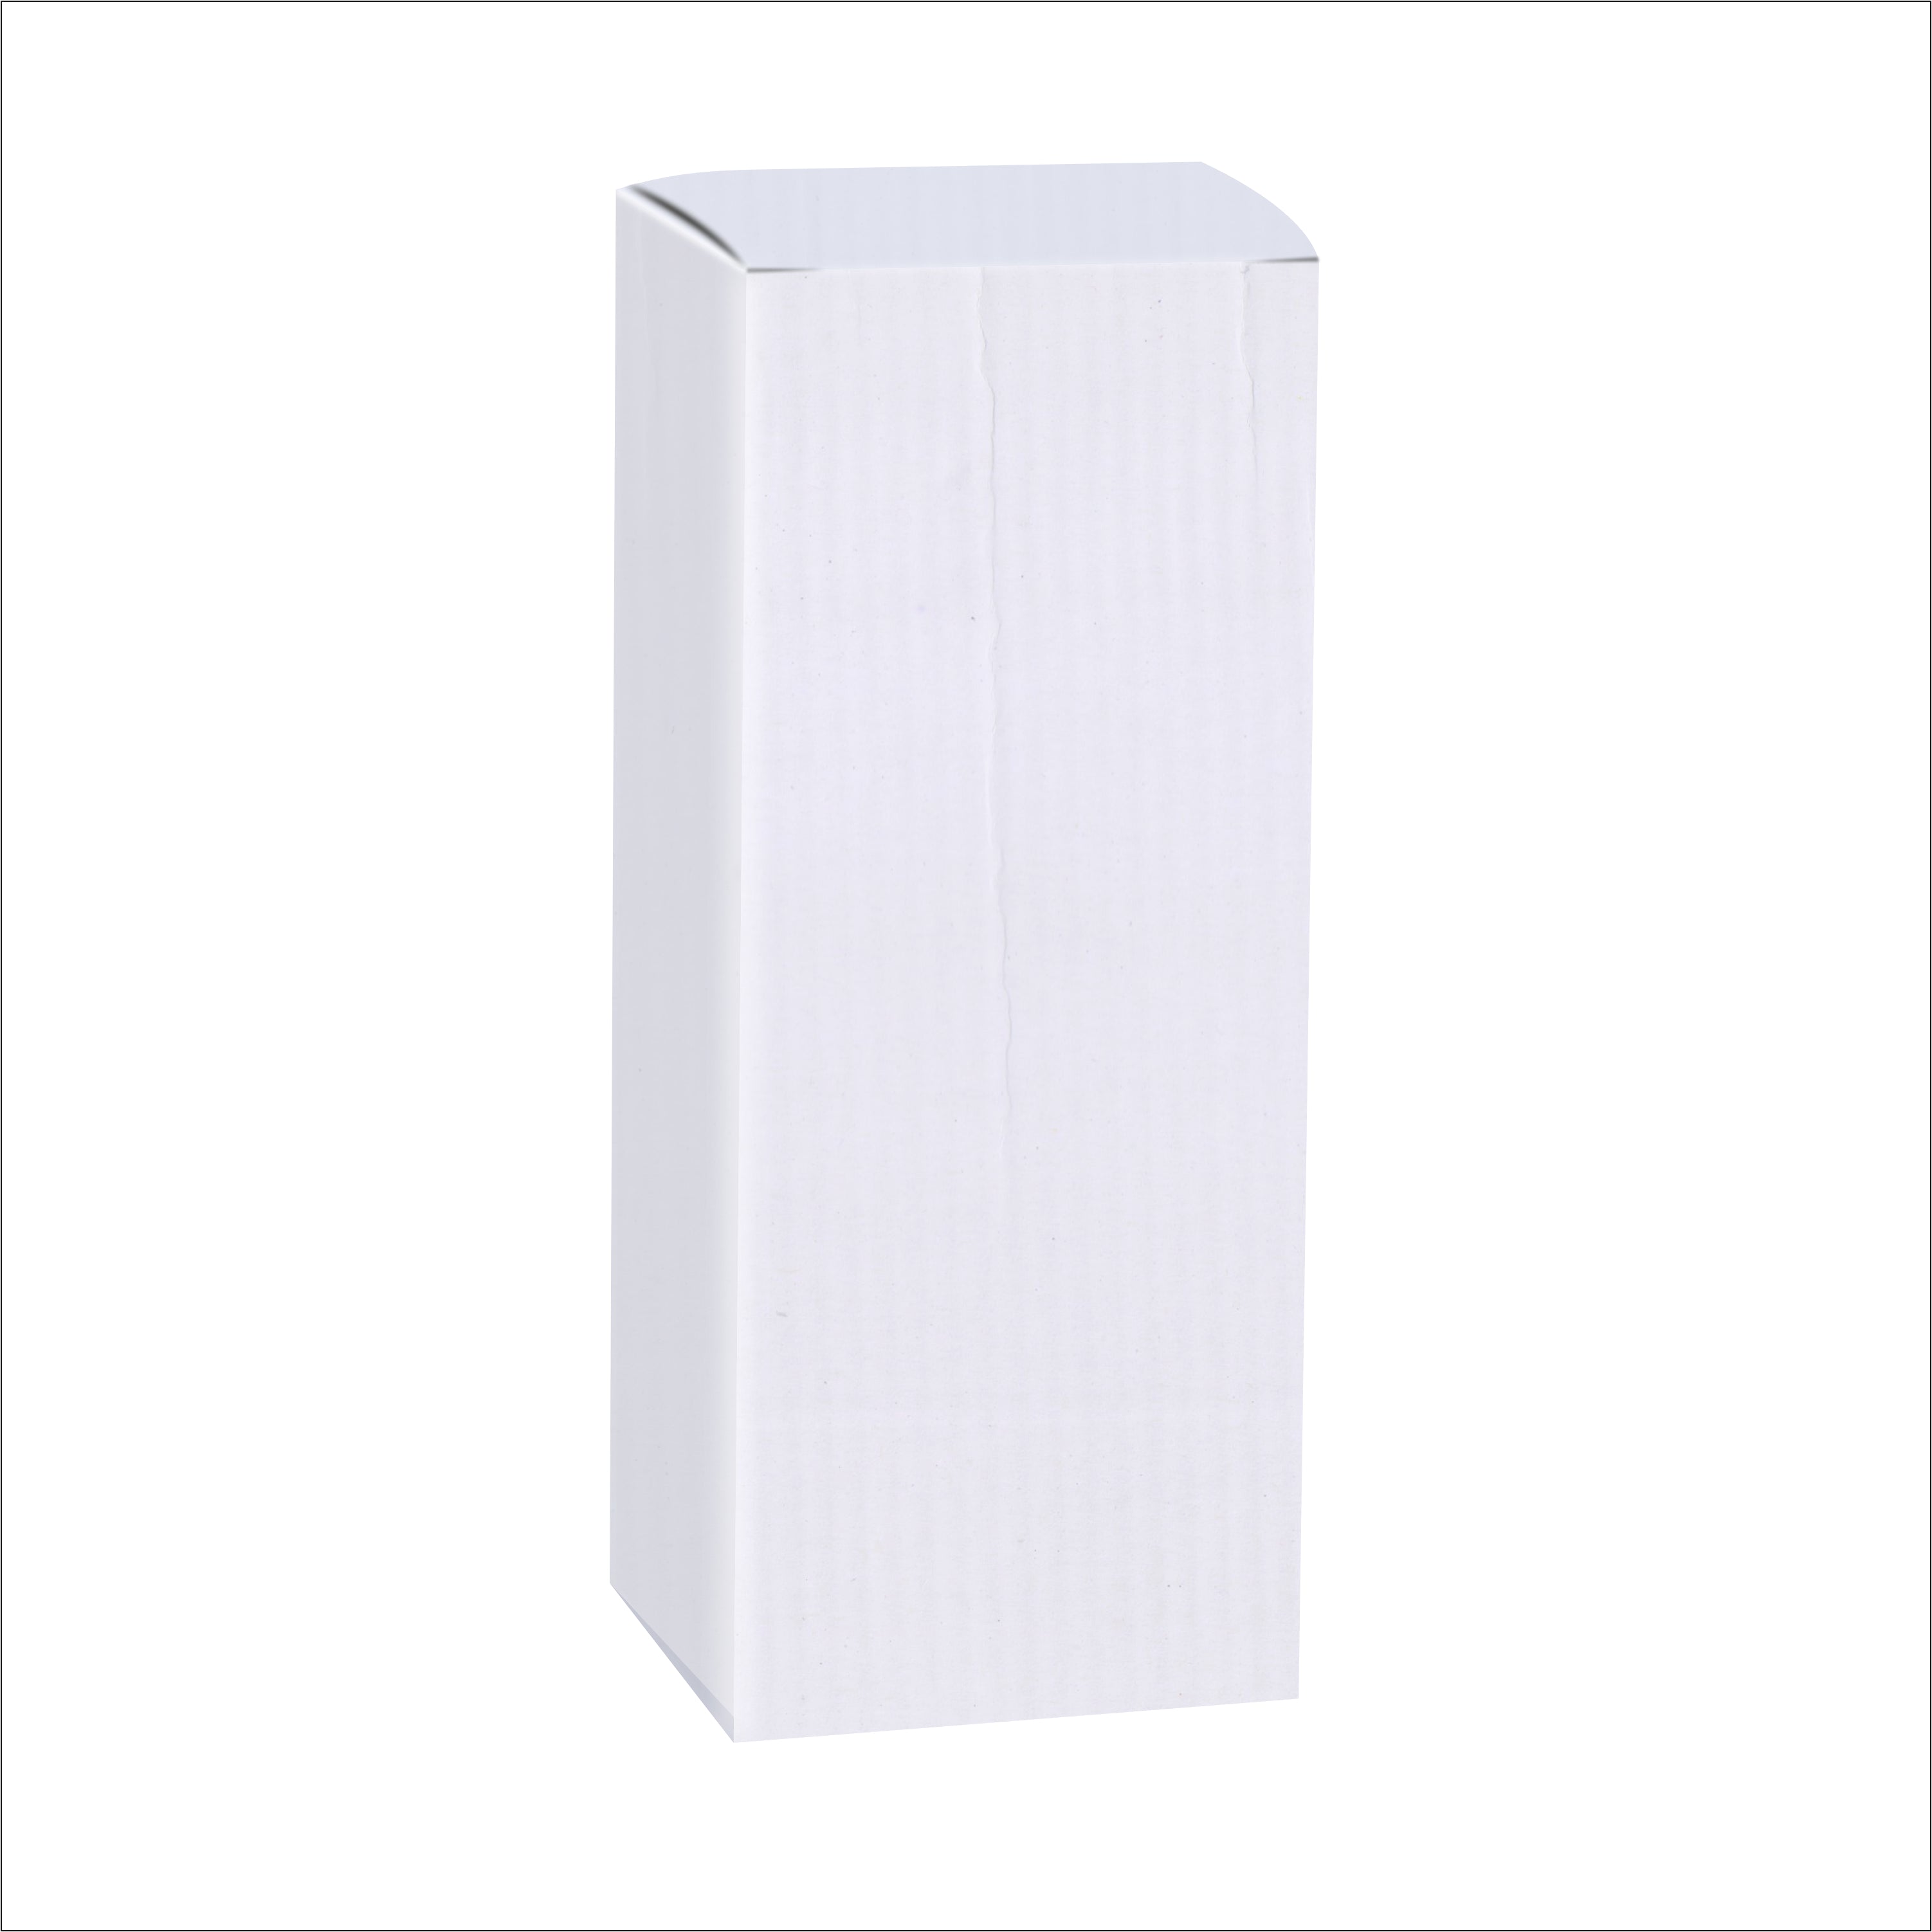 Zenvista Premium White Corrugated Box |9 x 4 x 4.5 cm | Pack of 10